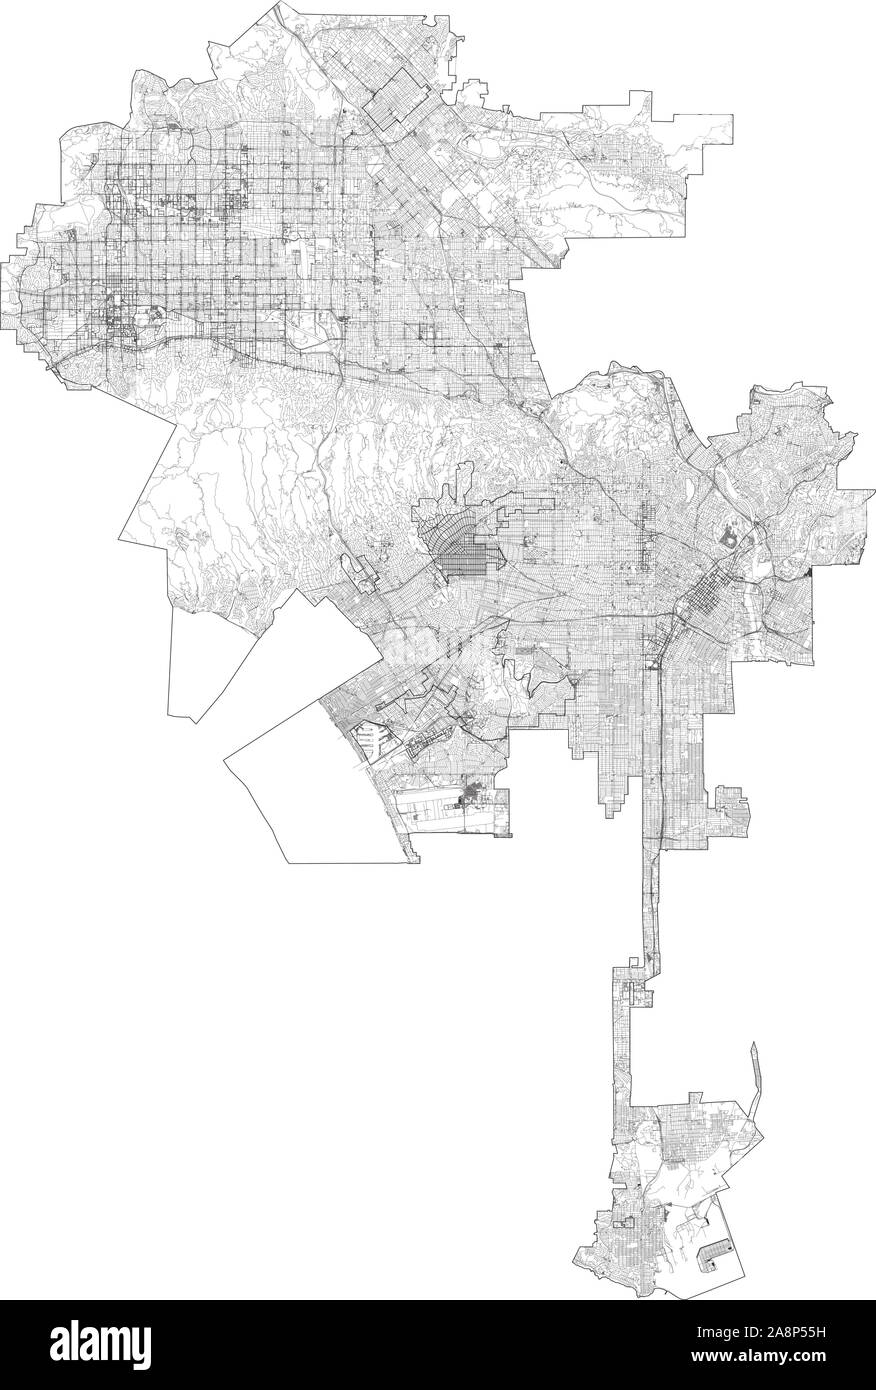 Satelliten Karte von Los Angeles, Kalifornien, USA. Karte Straßen, Straßen und Autobahnen, Flüsse. Verkehrsmittel Karte Stock Vektor